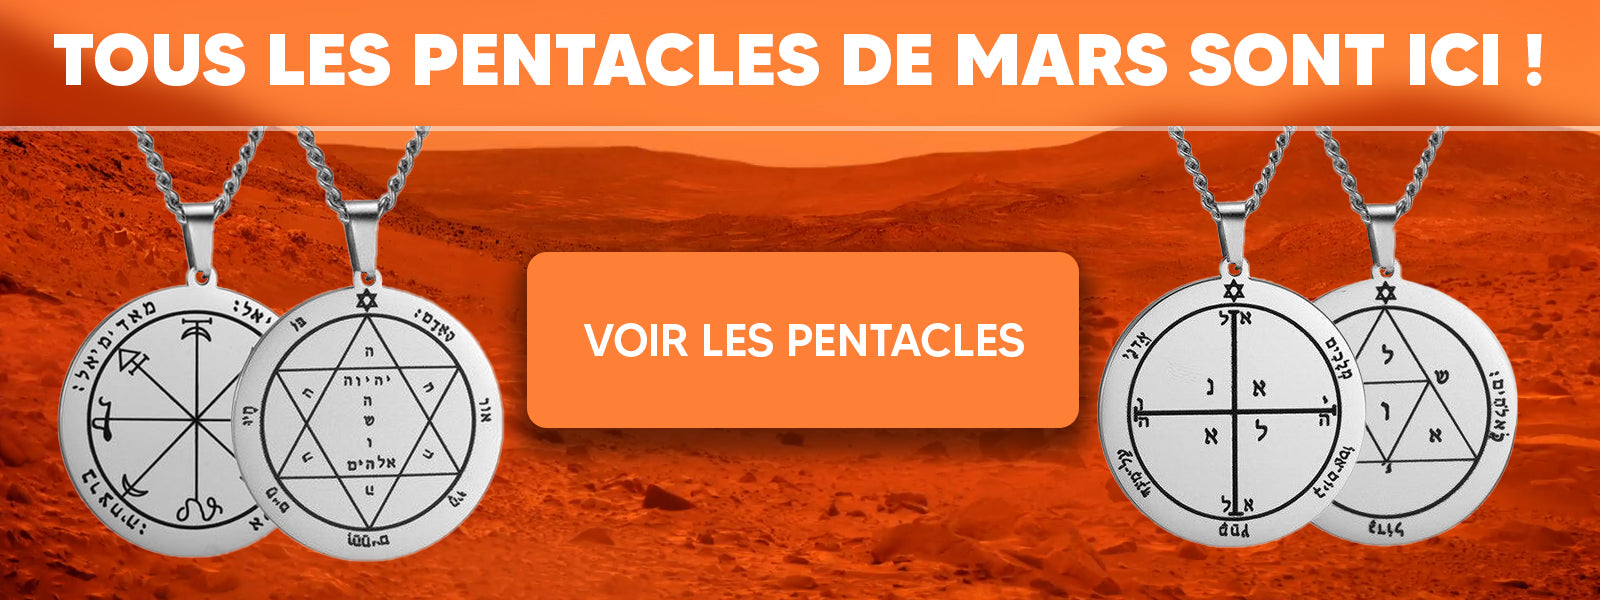 Pentacle de Mars